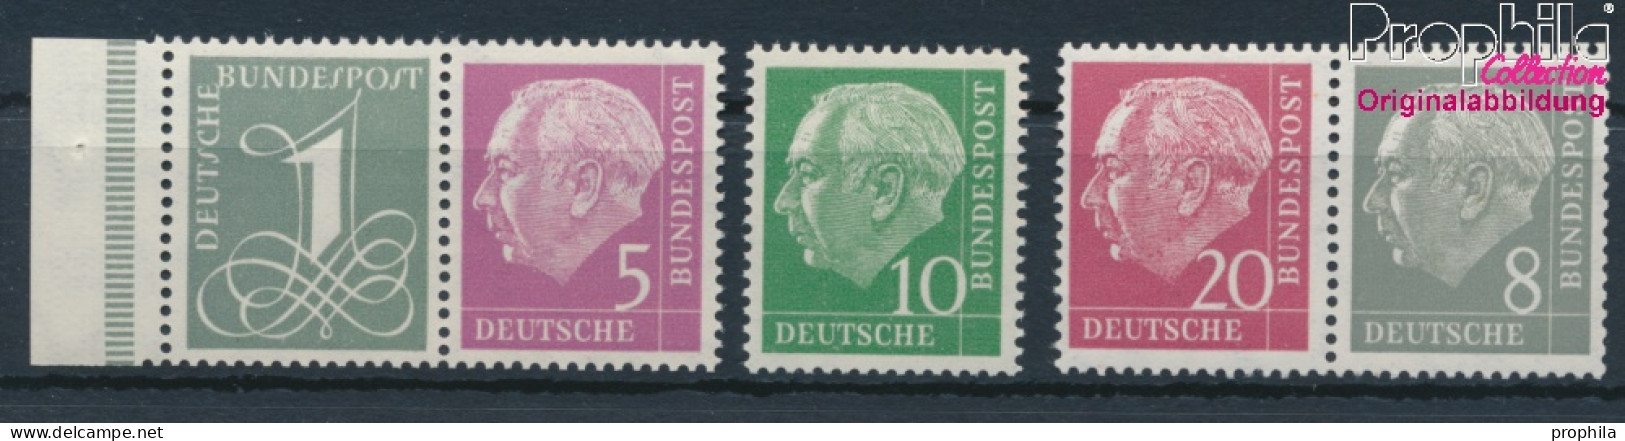 BRD 179Y,182Y,183Y,185Y,285Y (kompl.Ausg.) Liegendes Wasserzeichen Postfrisch 1960 Heuss I (10347826 - Unused Stamps